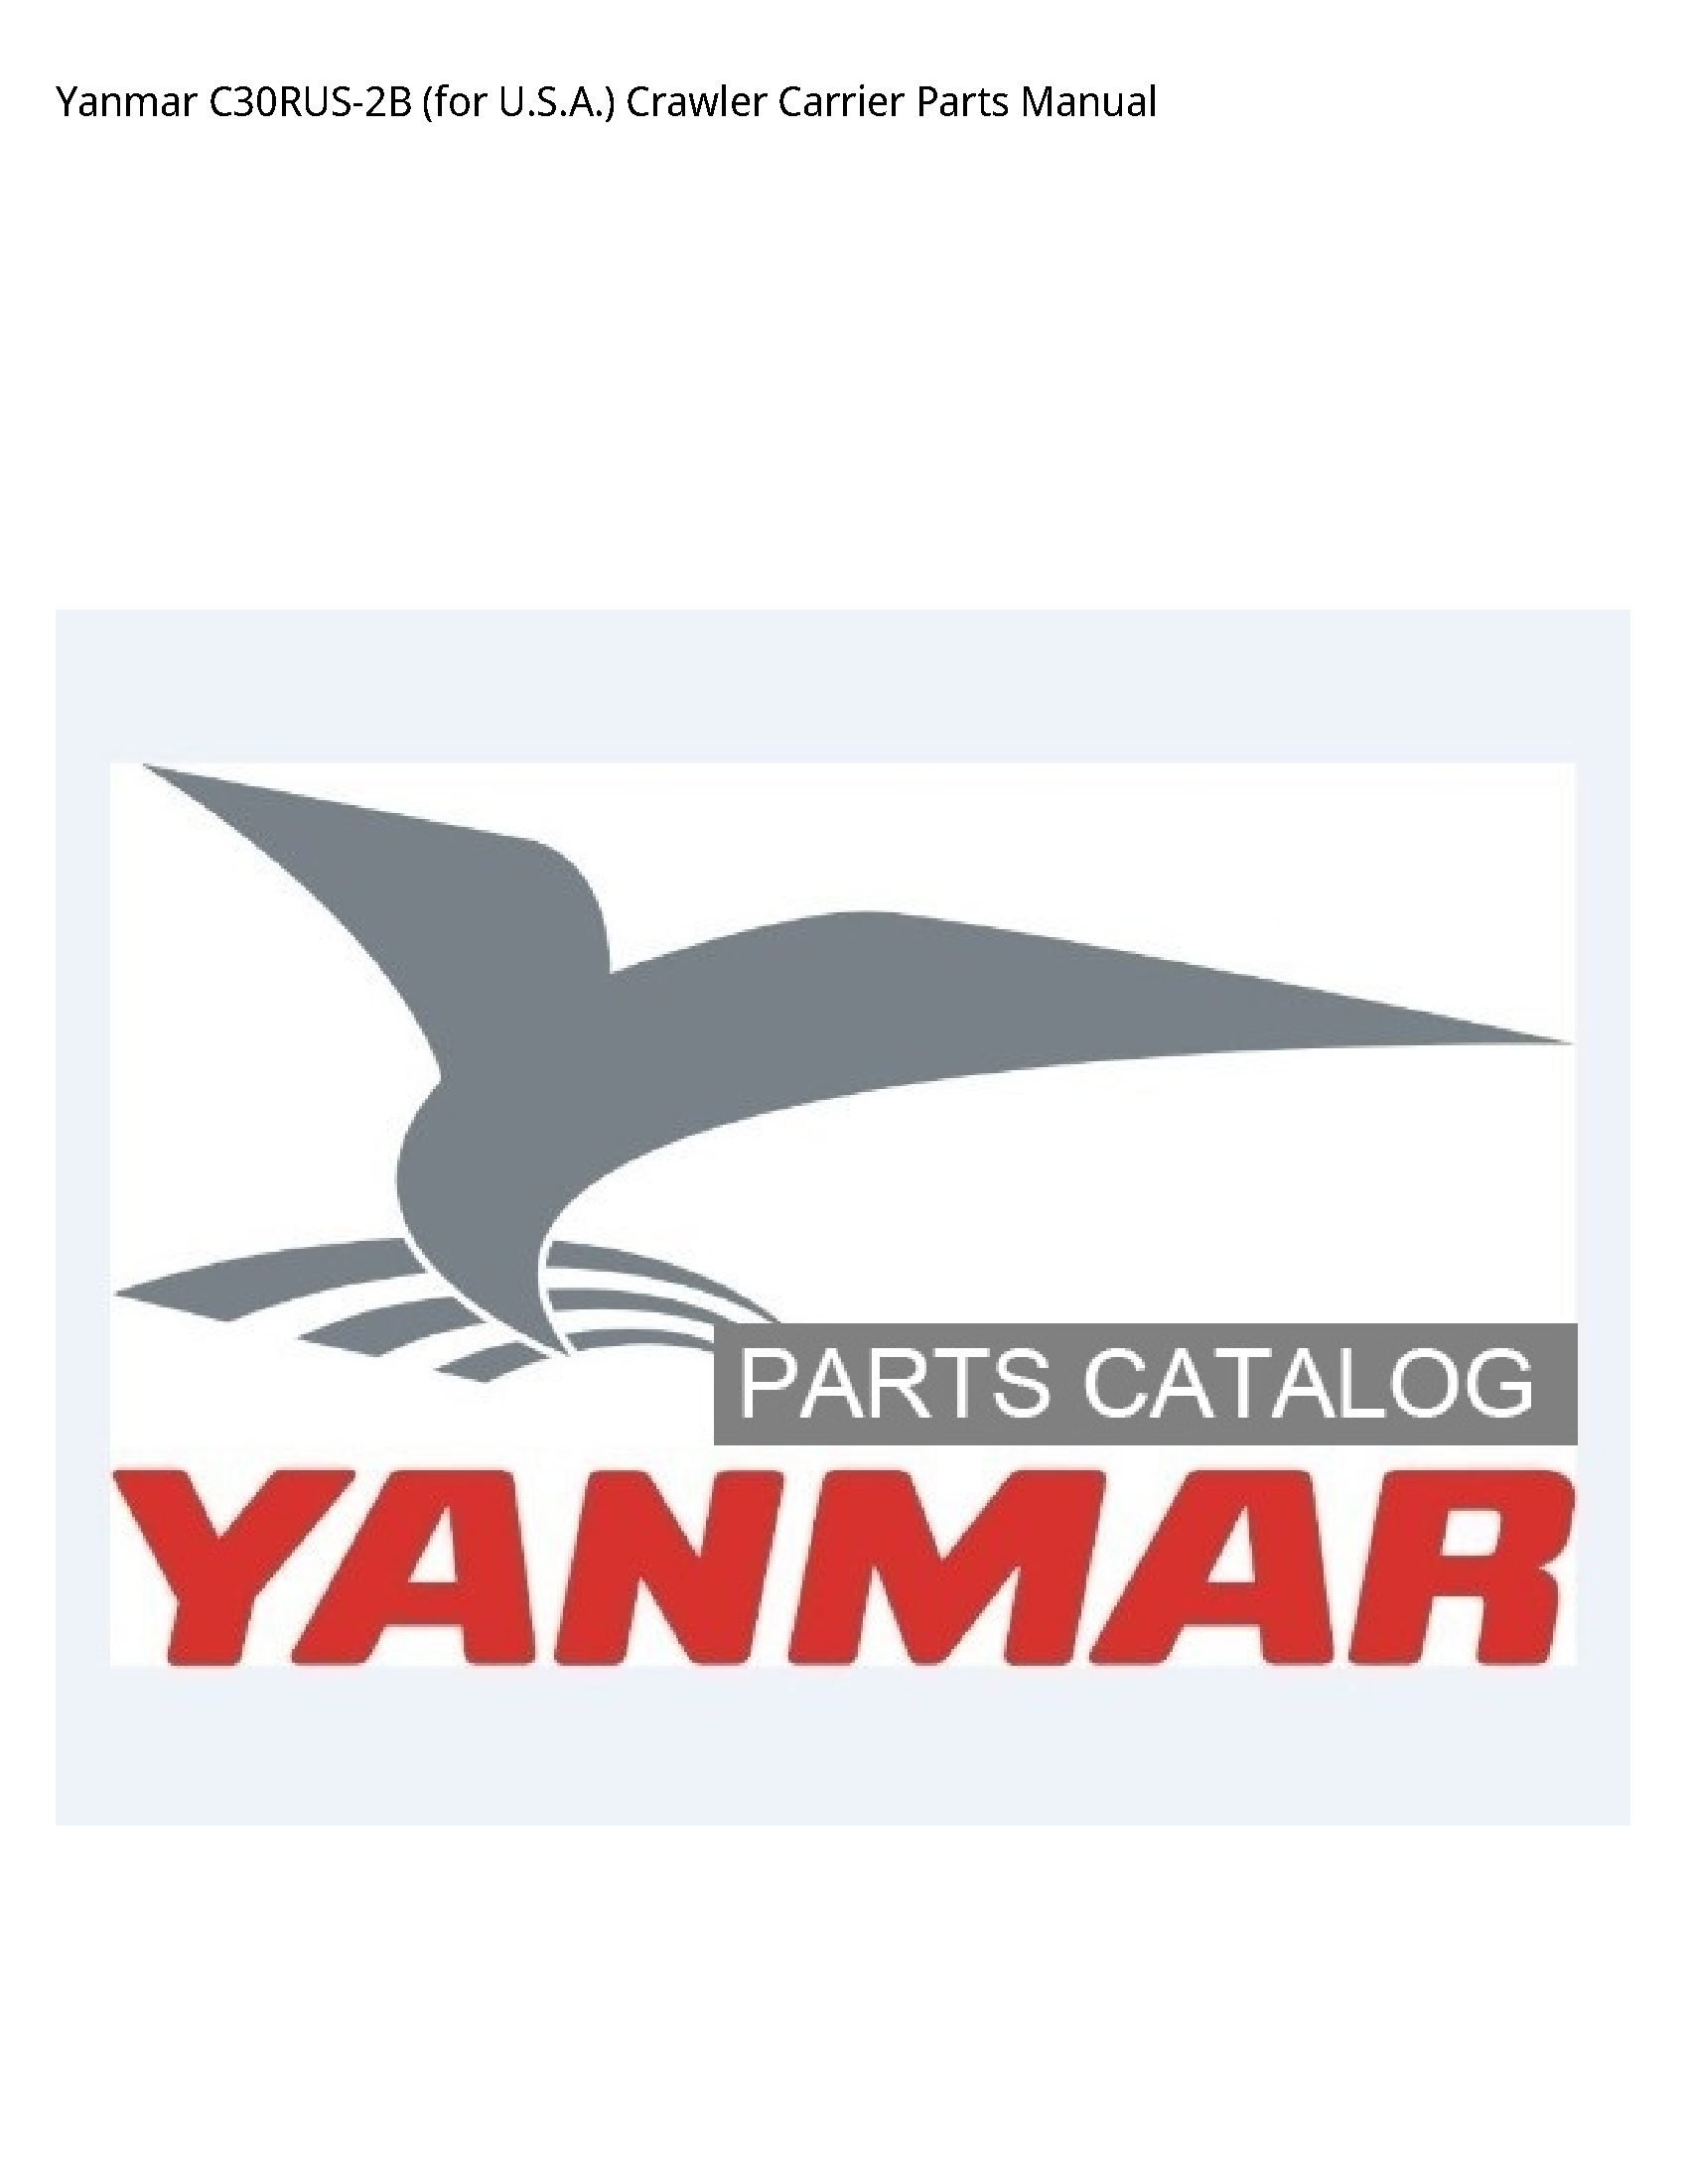 Yanmar C30RUS-2B (for U.S.A.) Crawler Carrier Parts manual